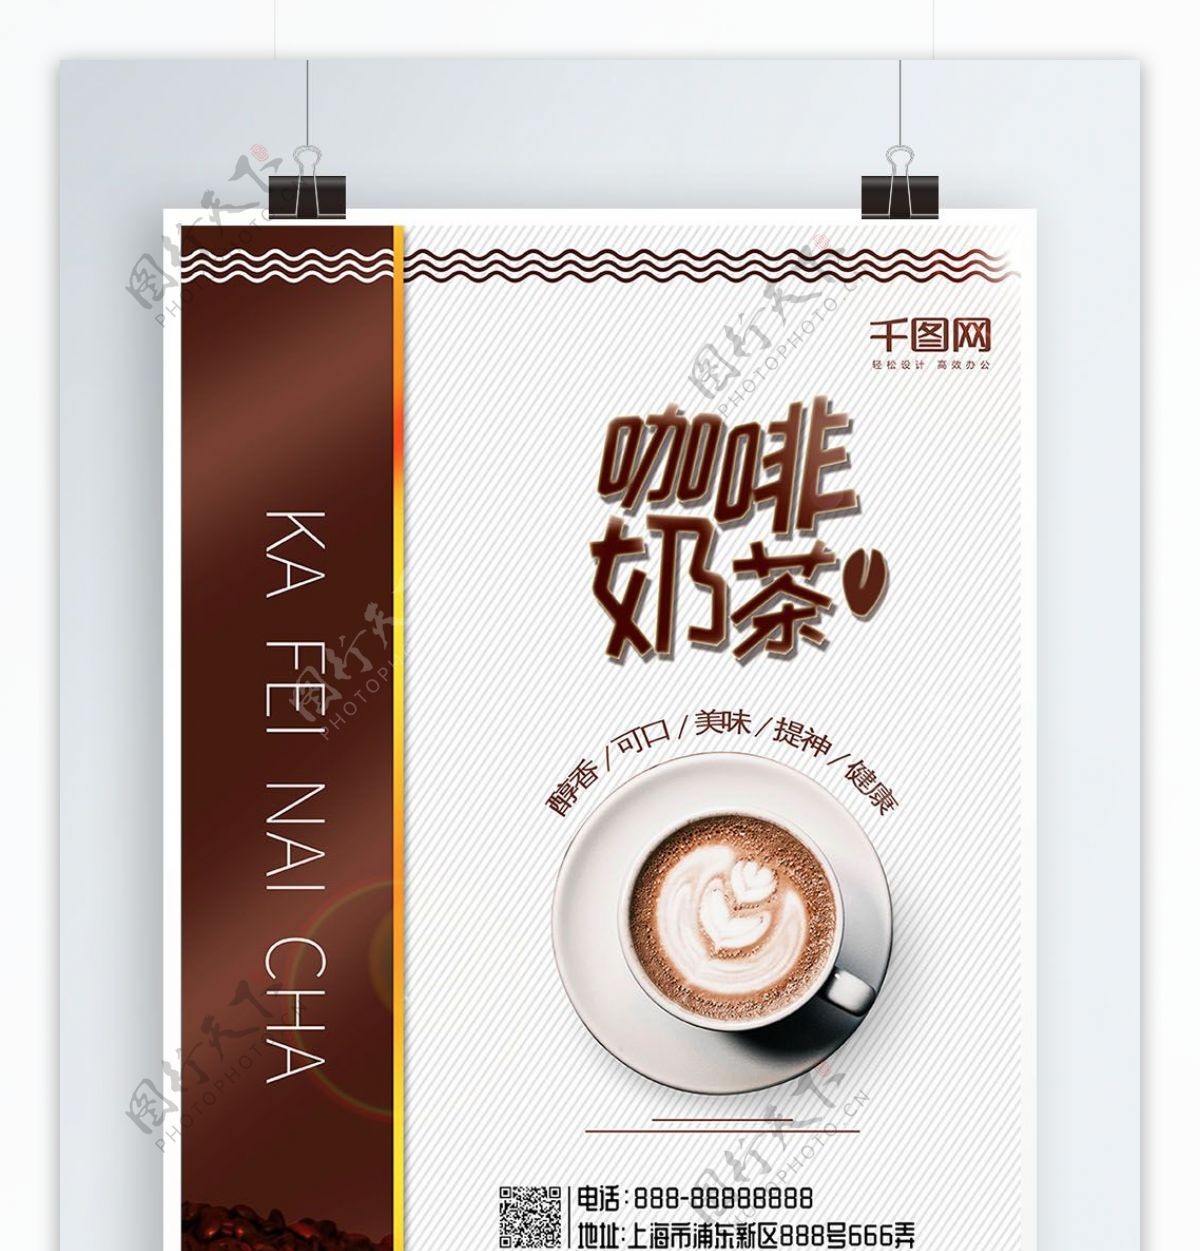 棕色简约风咖啡奶茶咖啡厅推荐促销美食海报